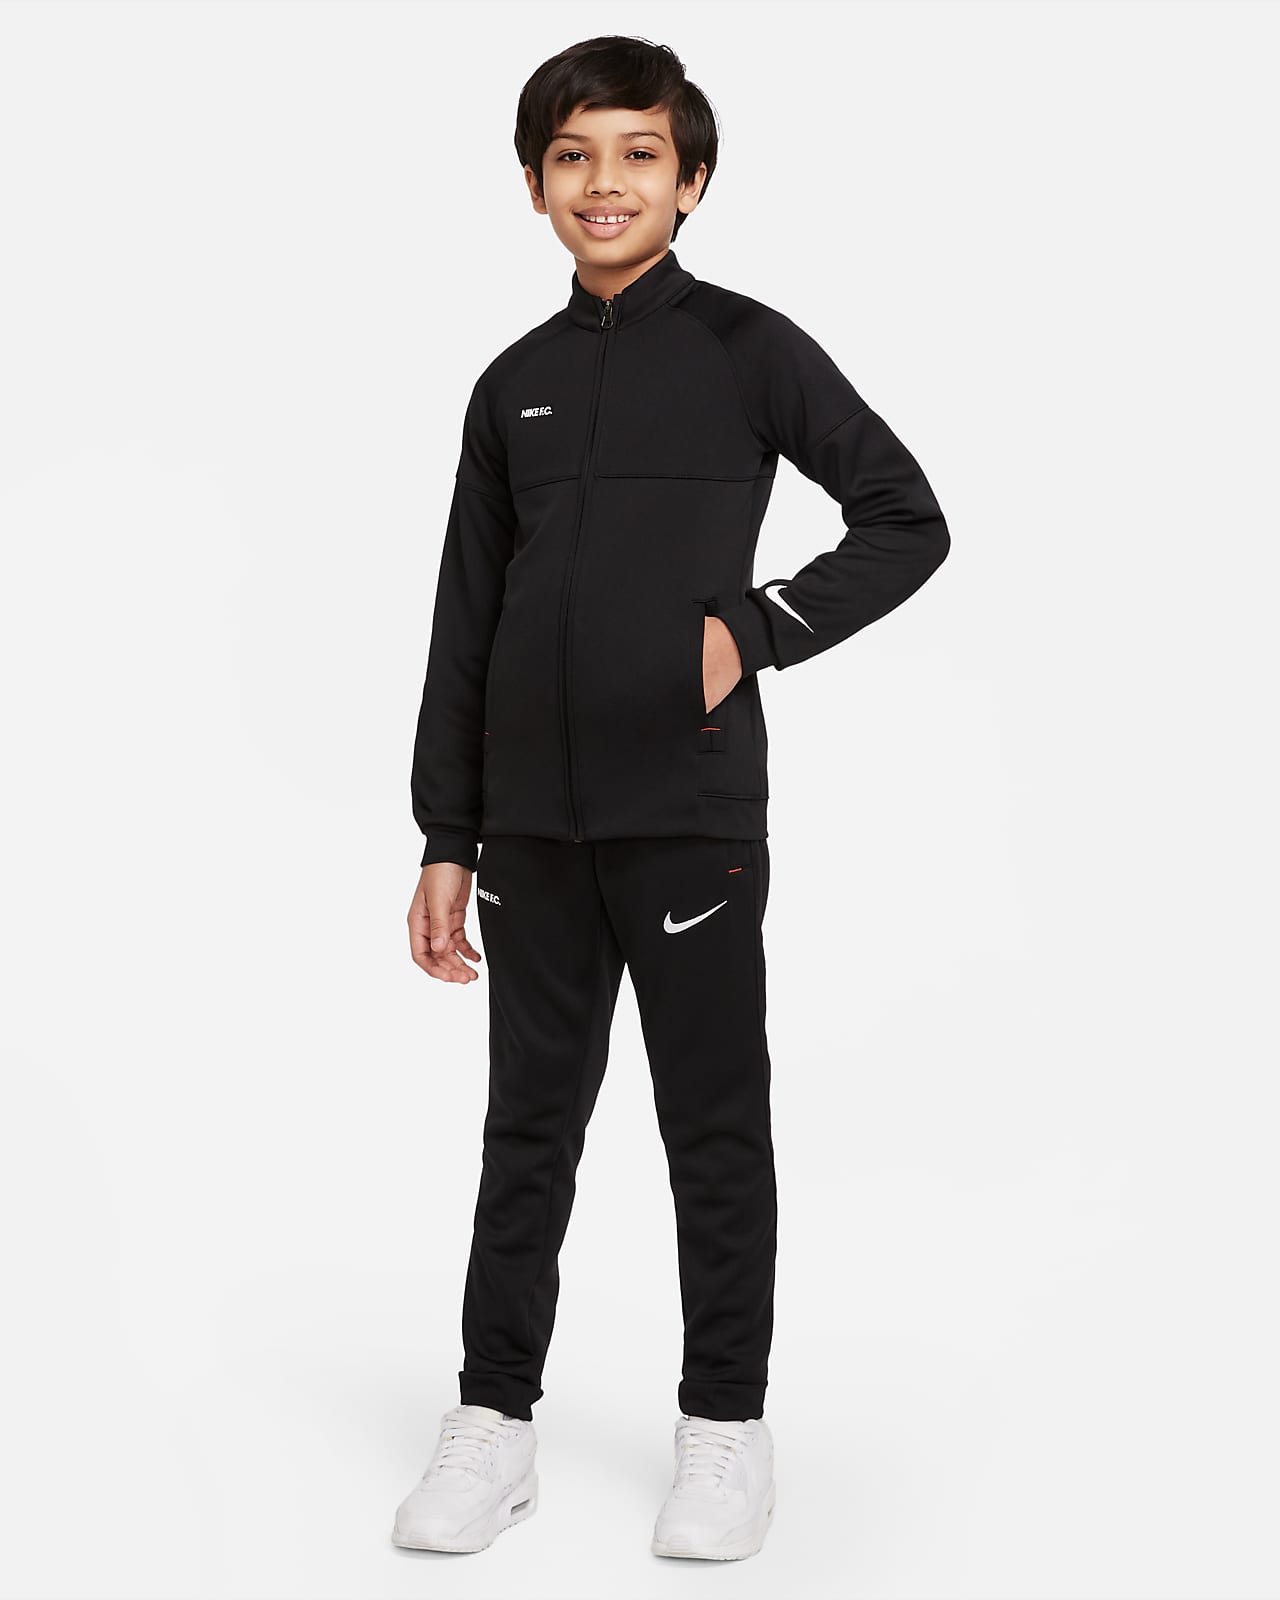 Nike F.C. Libero Fußball-Trainingsanzug für ältere Kinder